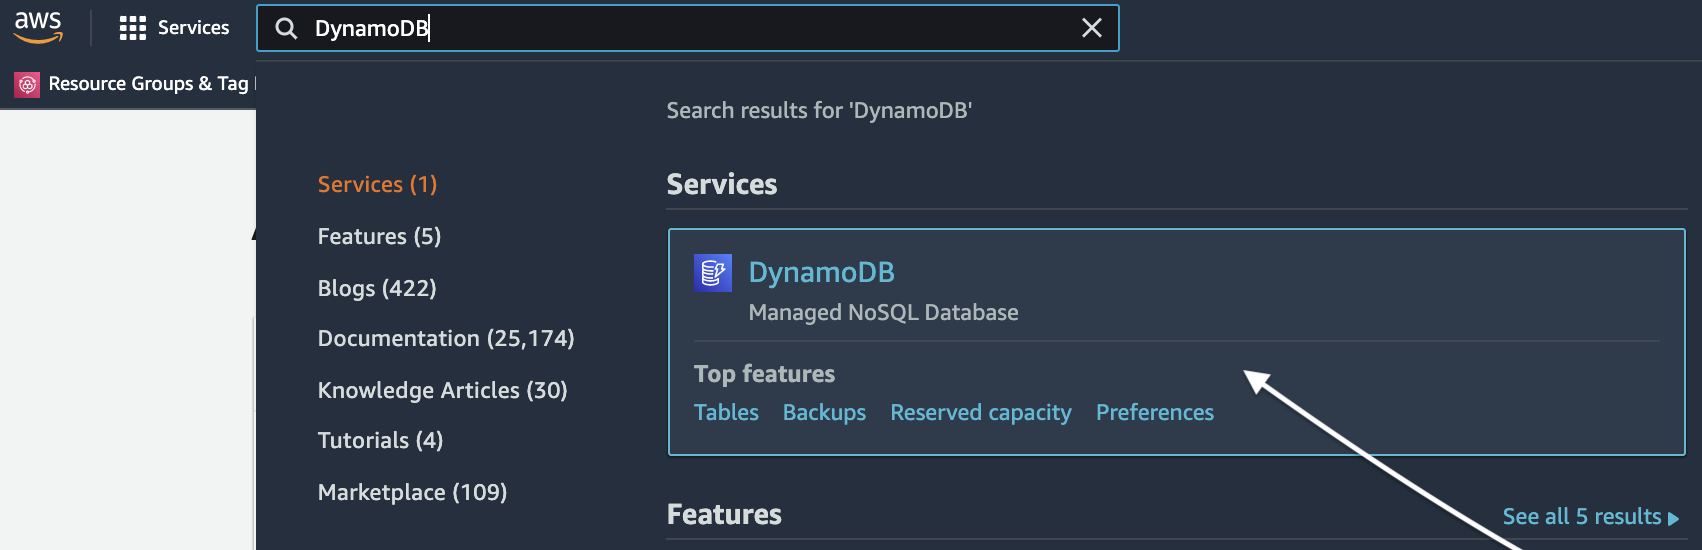 Accessing the DynamoDB Dashboard